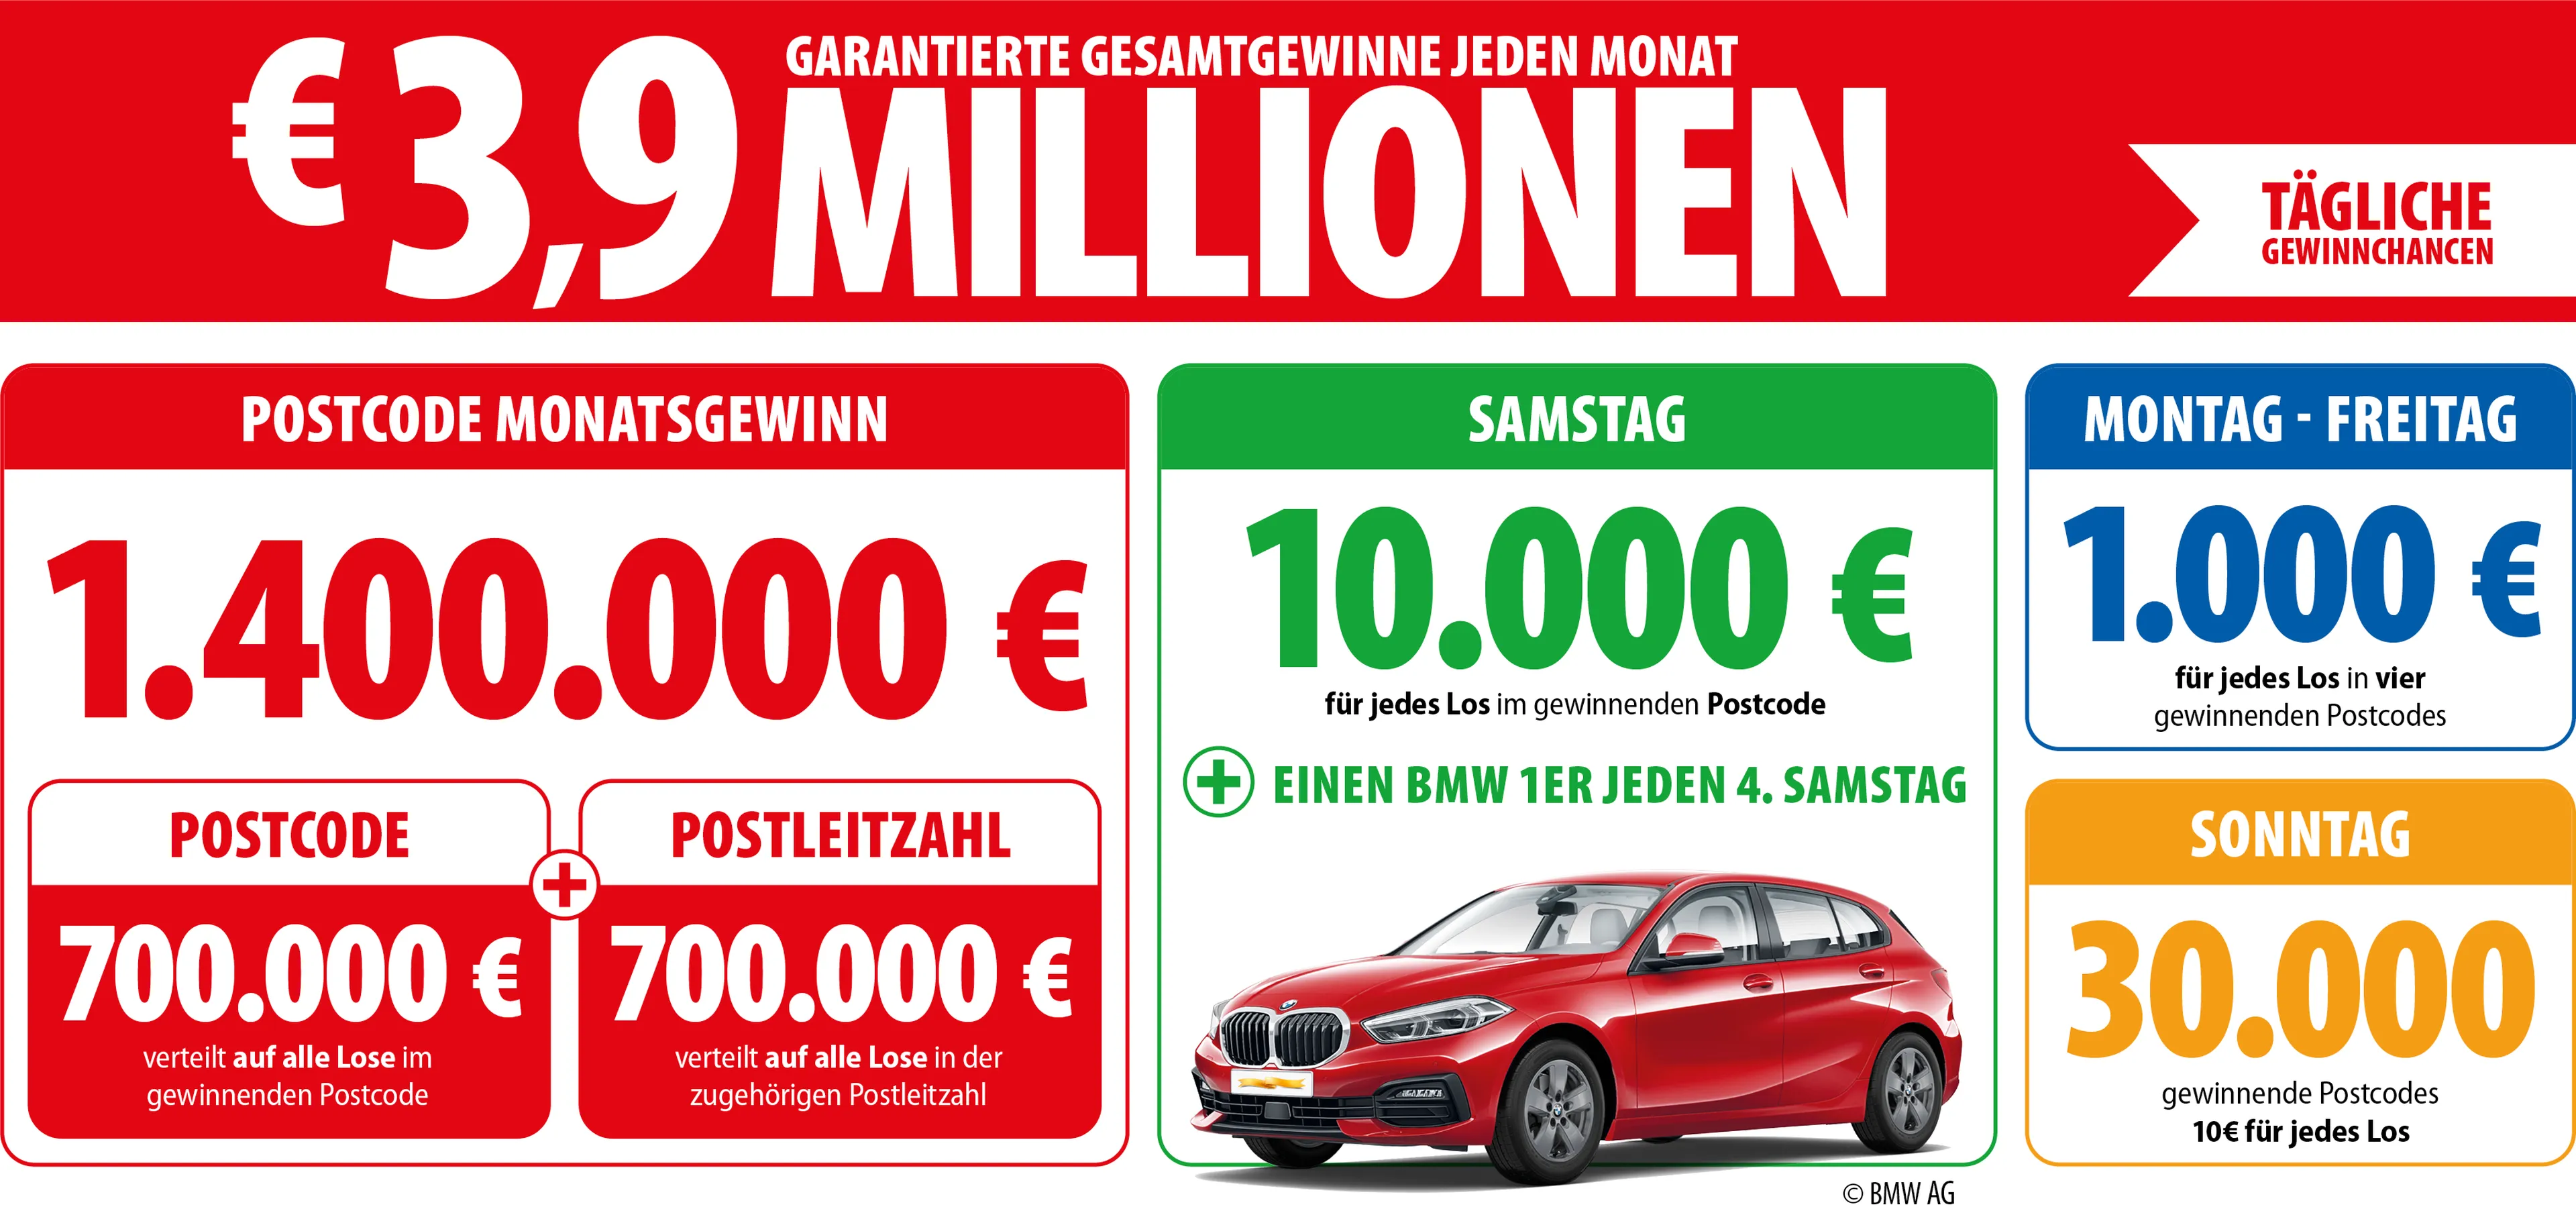 3,9 Millionen Euro an garantierten Gesamtgewinnen jeden Monat